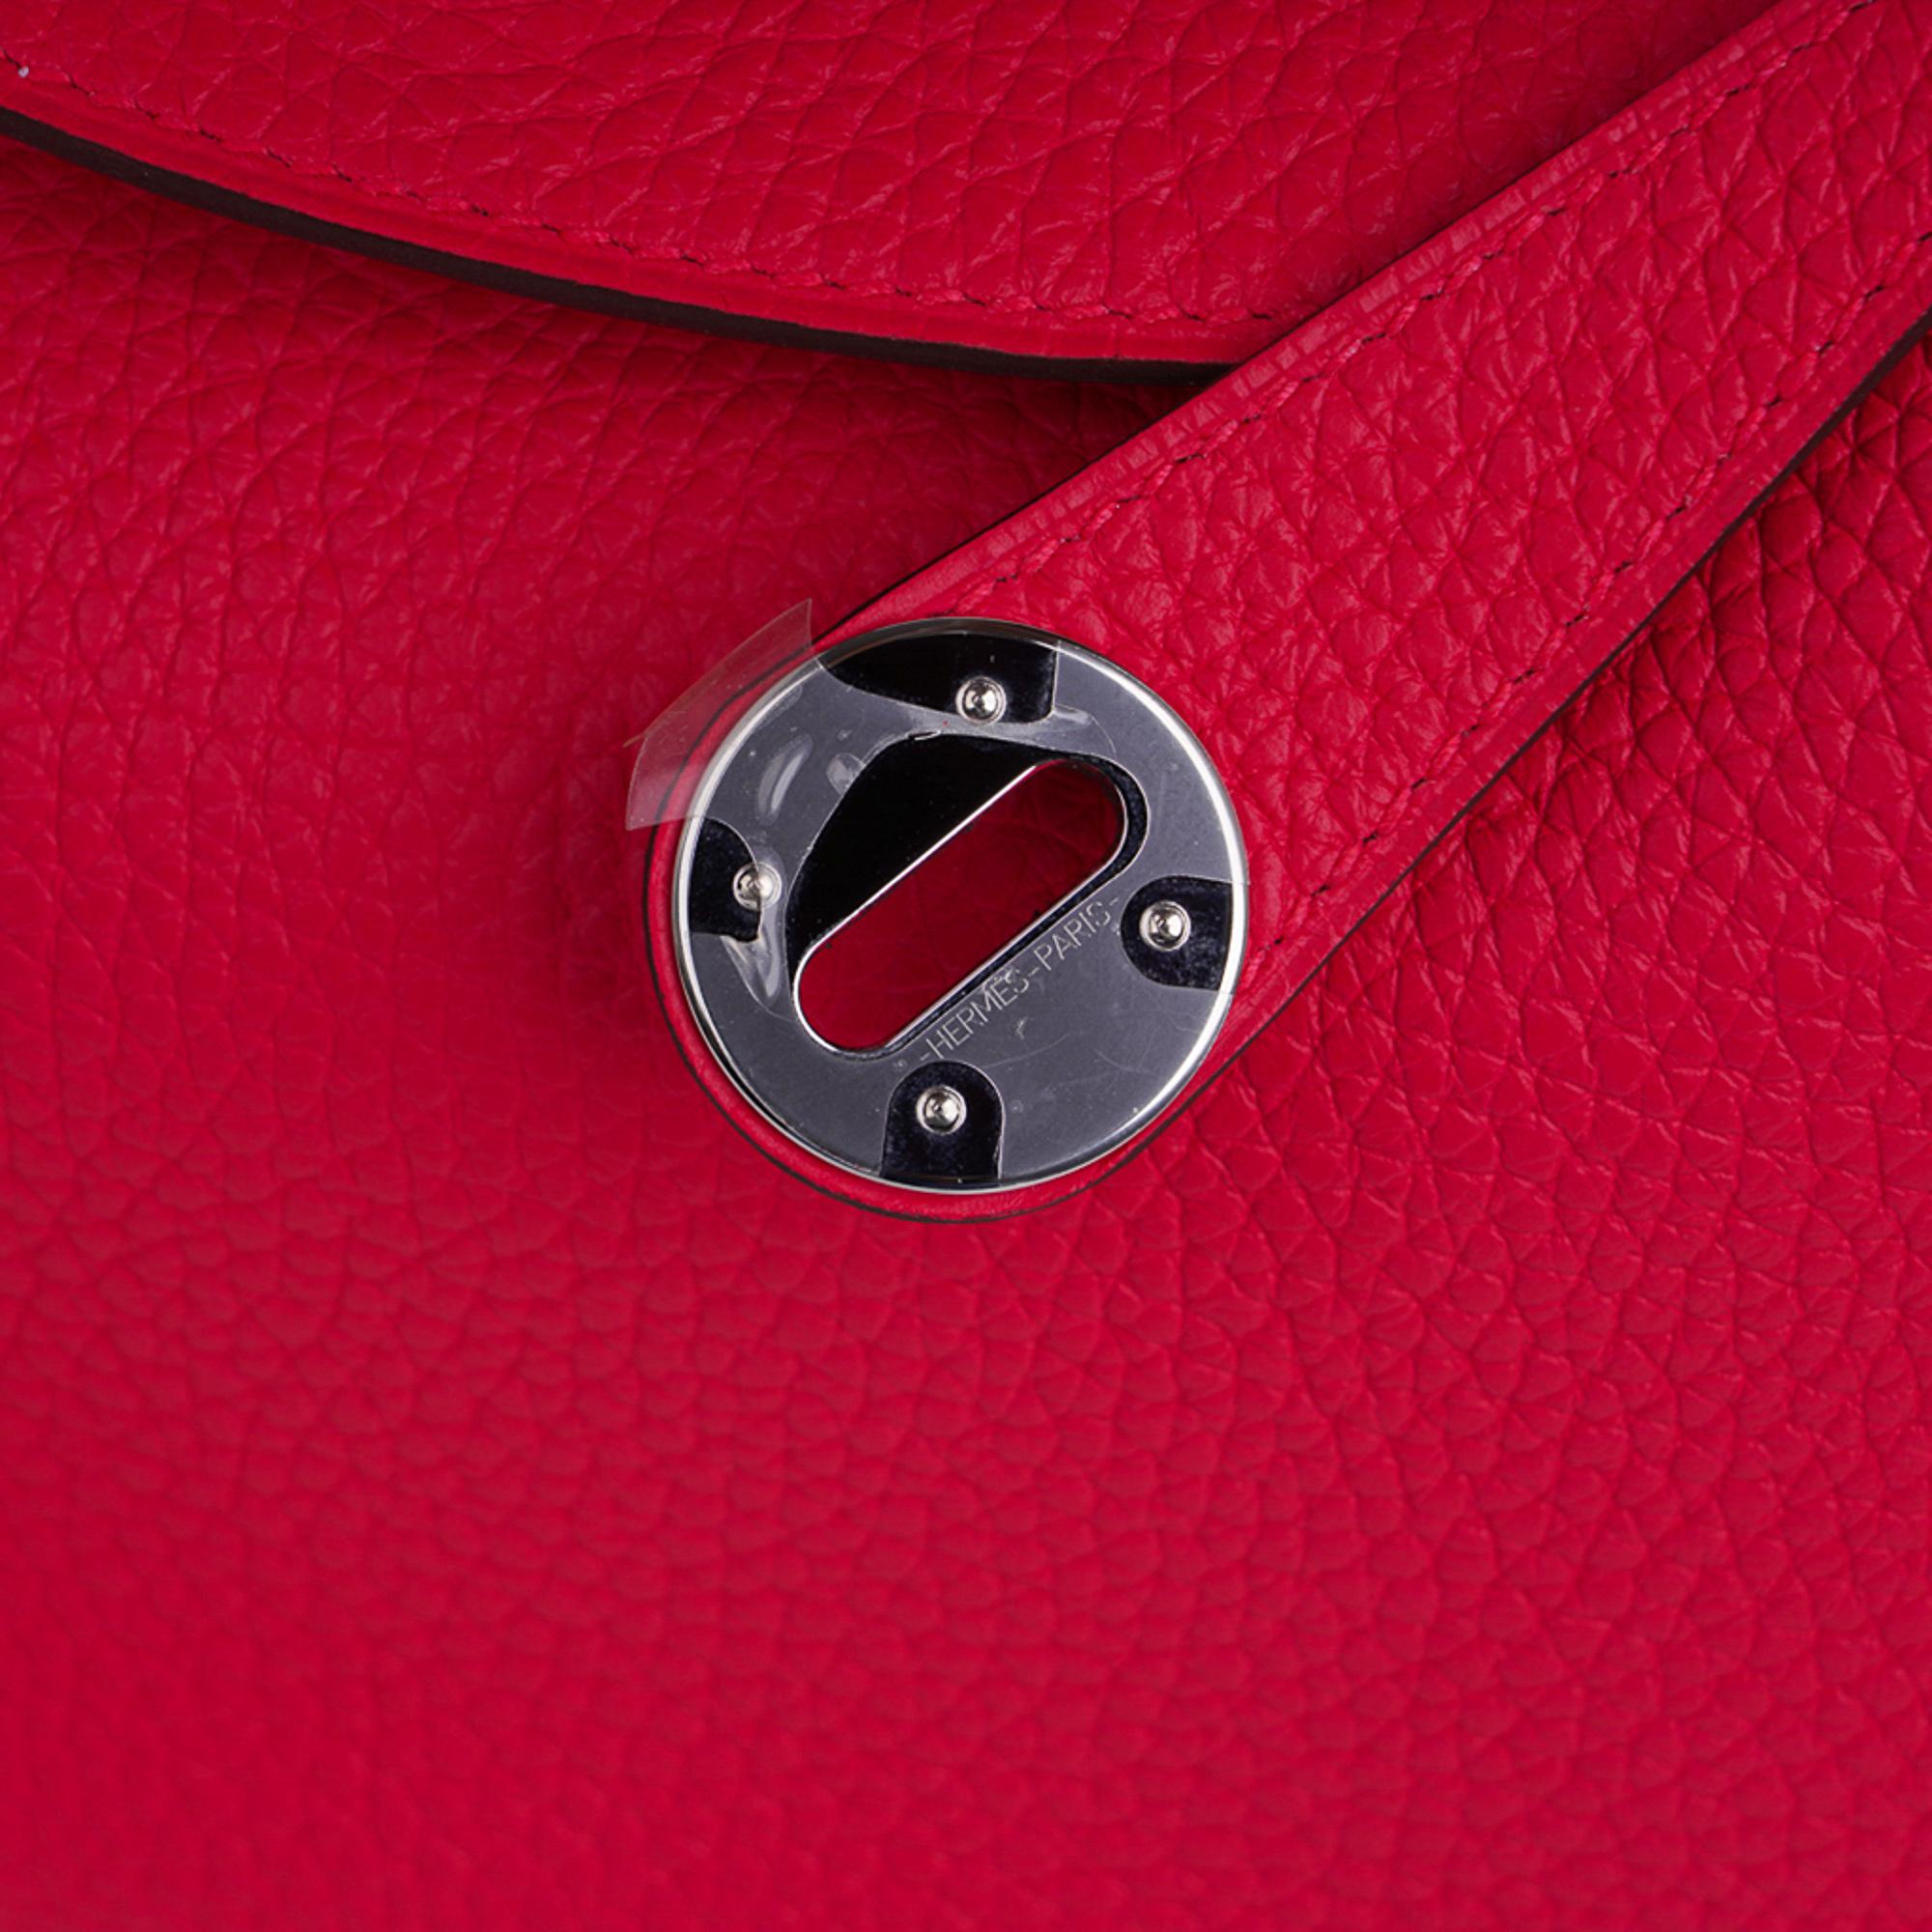 L'authenticité du sac Lindy 26 d'Hermès est garantie dans le coloris Rose Extreme.
Cuir souple et doux Clemence.
Freah avec quincaillerie en palladium.
Ce sac polyvalent peut être porté à la main ou à l'épaule.
Intérieur spacieux avec une poche